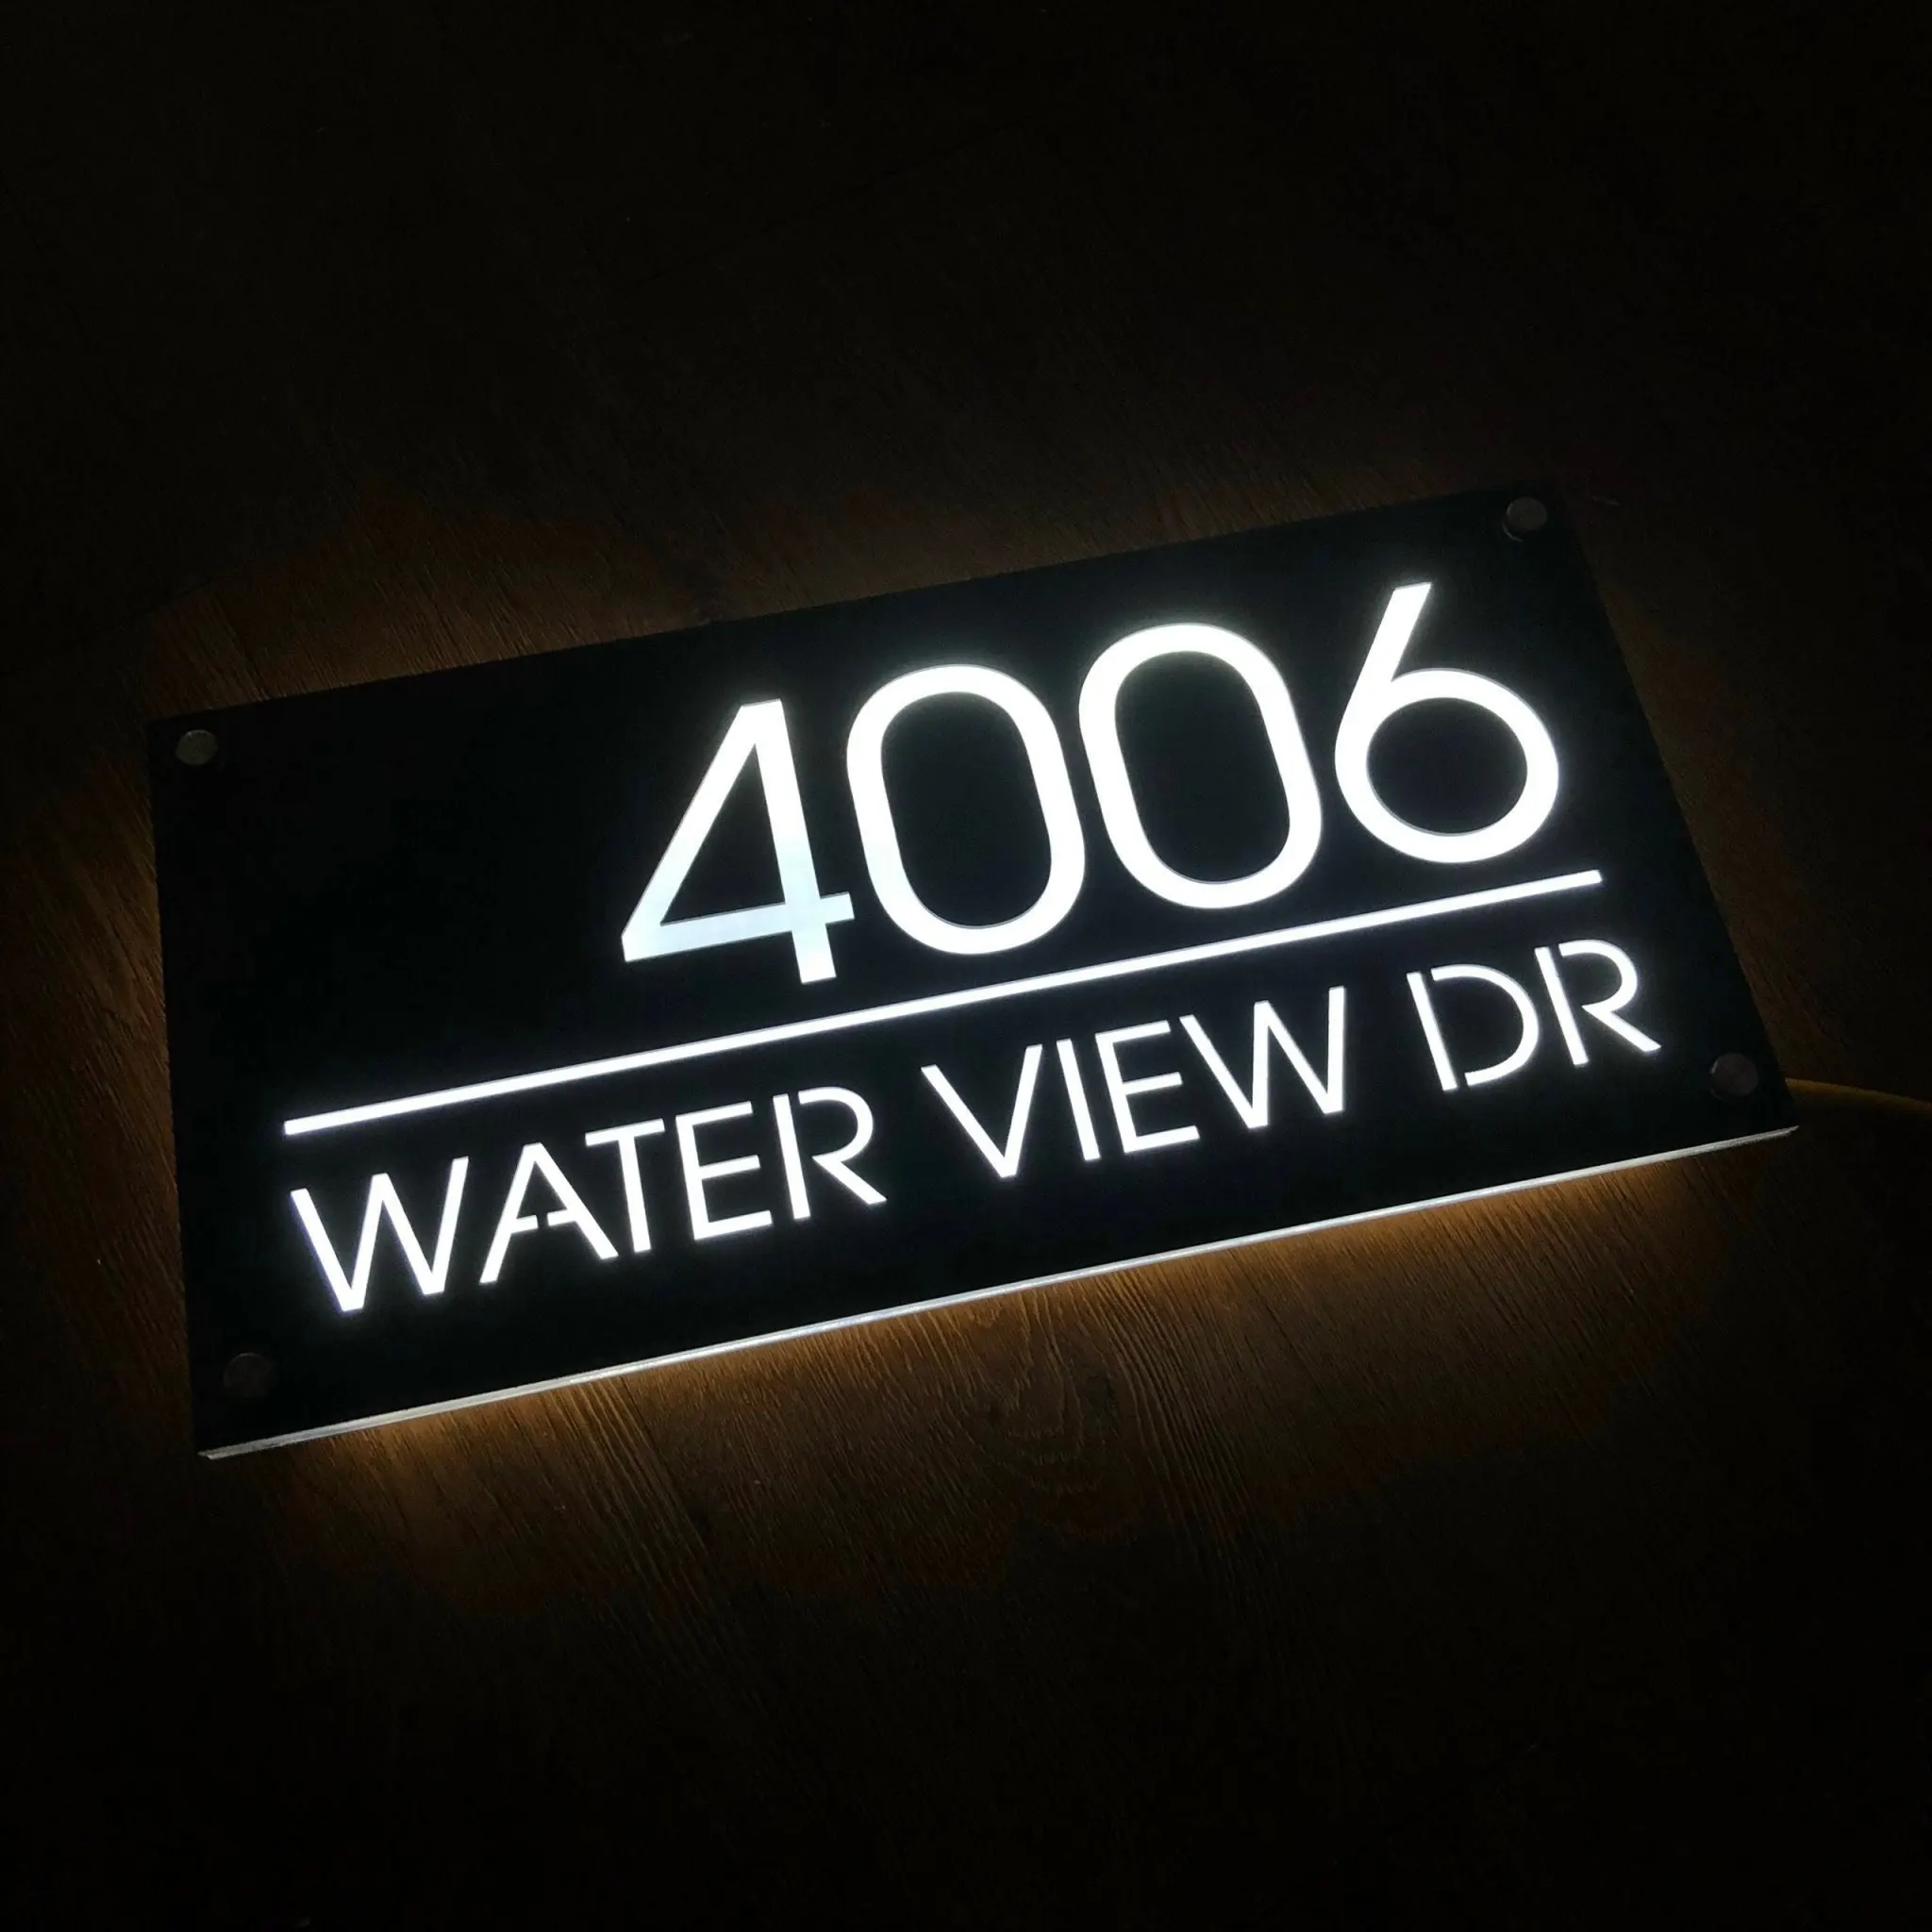 Dr. house čísel značka vodorovný moderní lehký akryl domácí dveře dekorace osvětlený adresovat ulice značka pro přední ráhno lighted LED